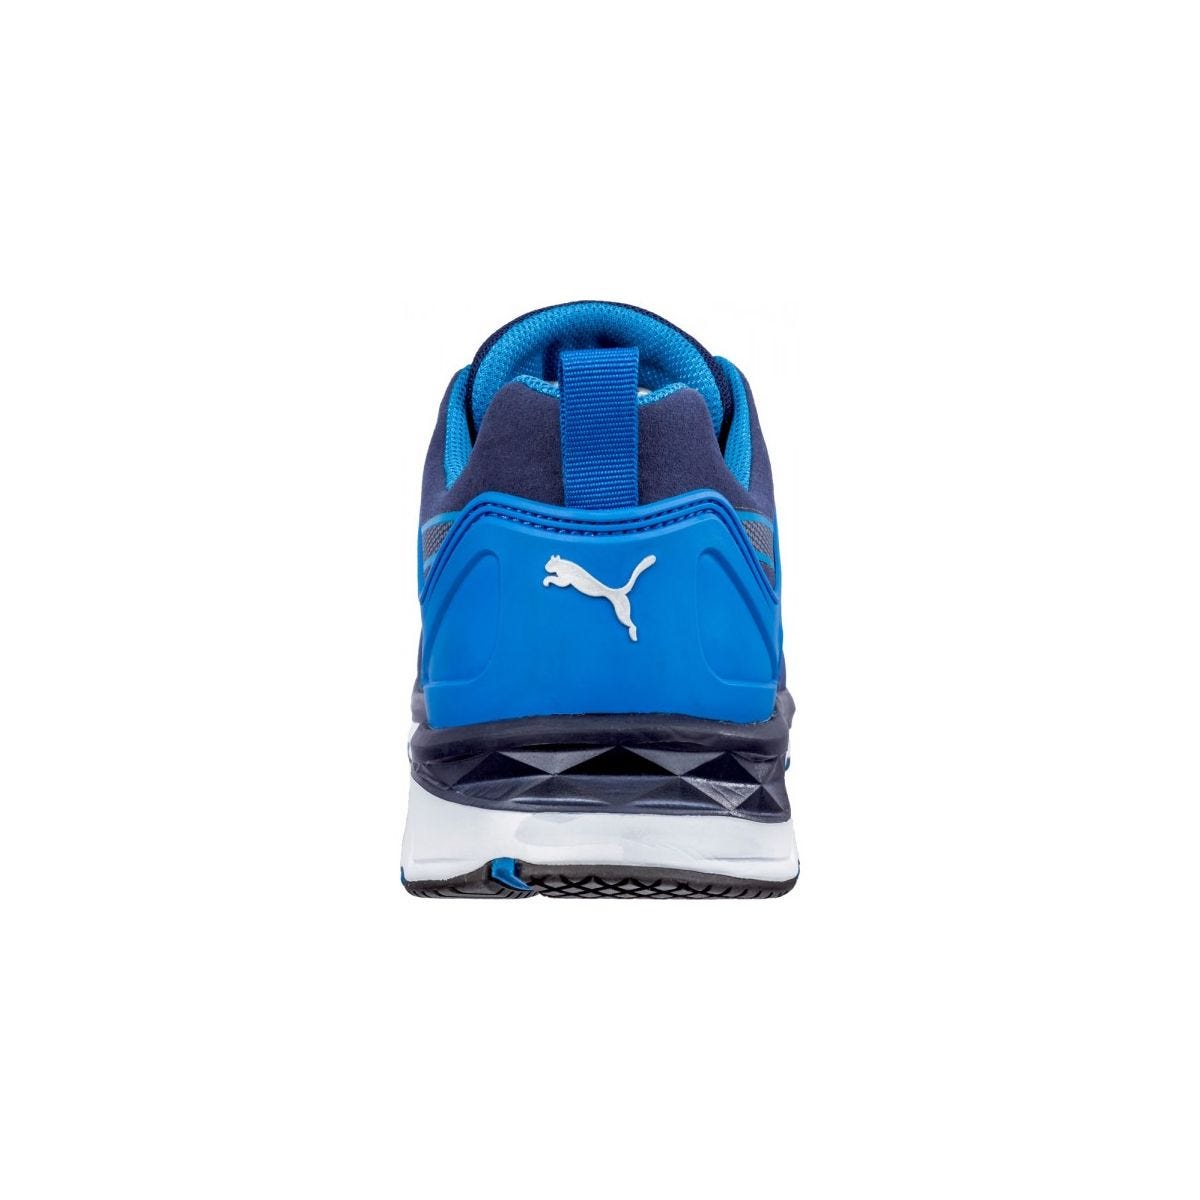 Chaussures de sécurité Velocity 2.0 Bleu Low S1P - Puma - Taille 36 1